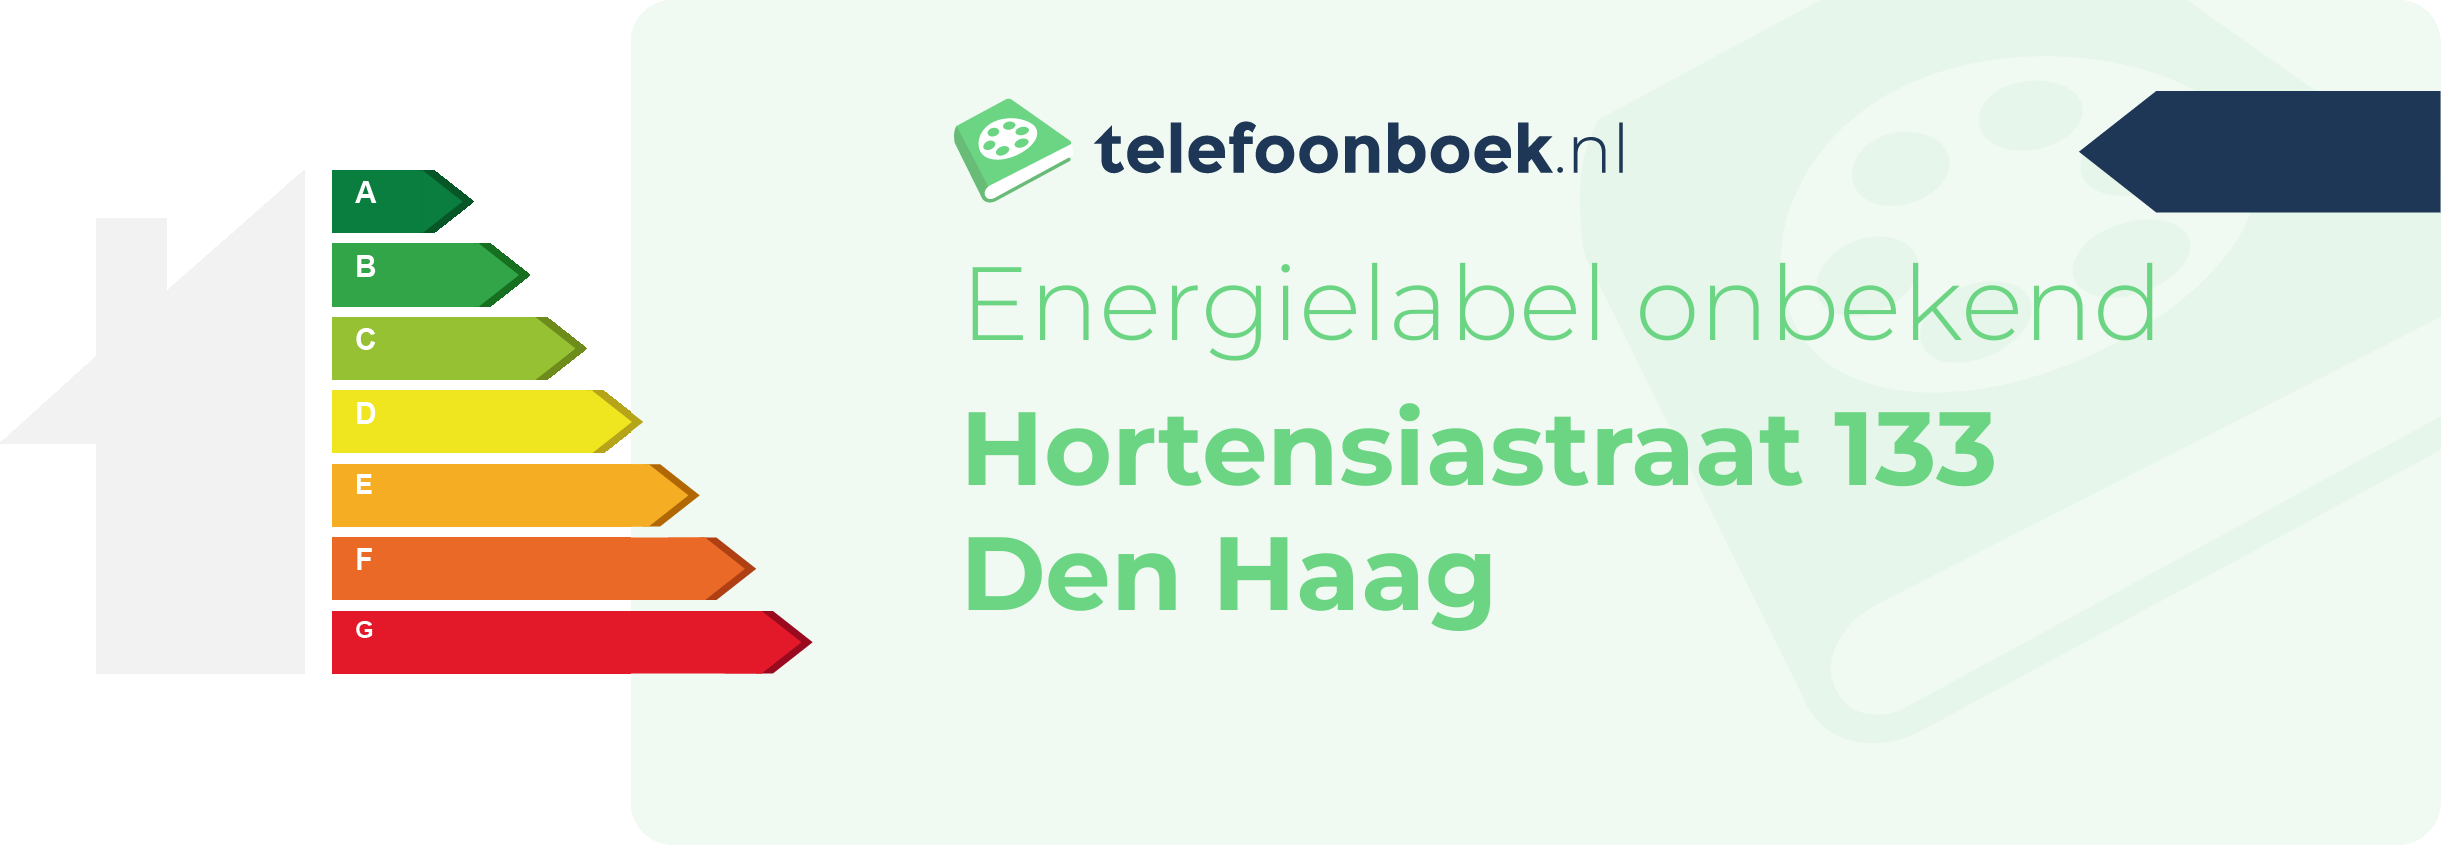 Energielabel Hortensiastraat 133 Den Haag